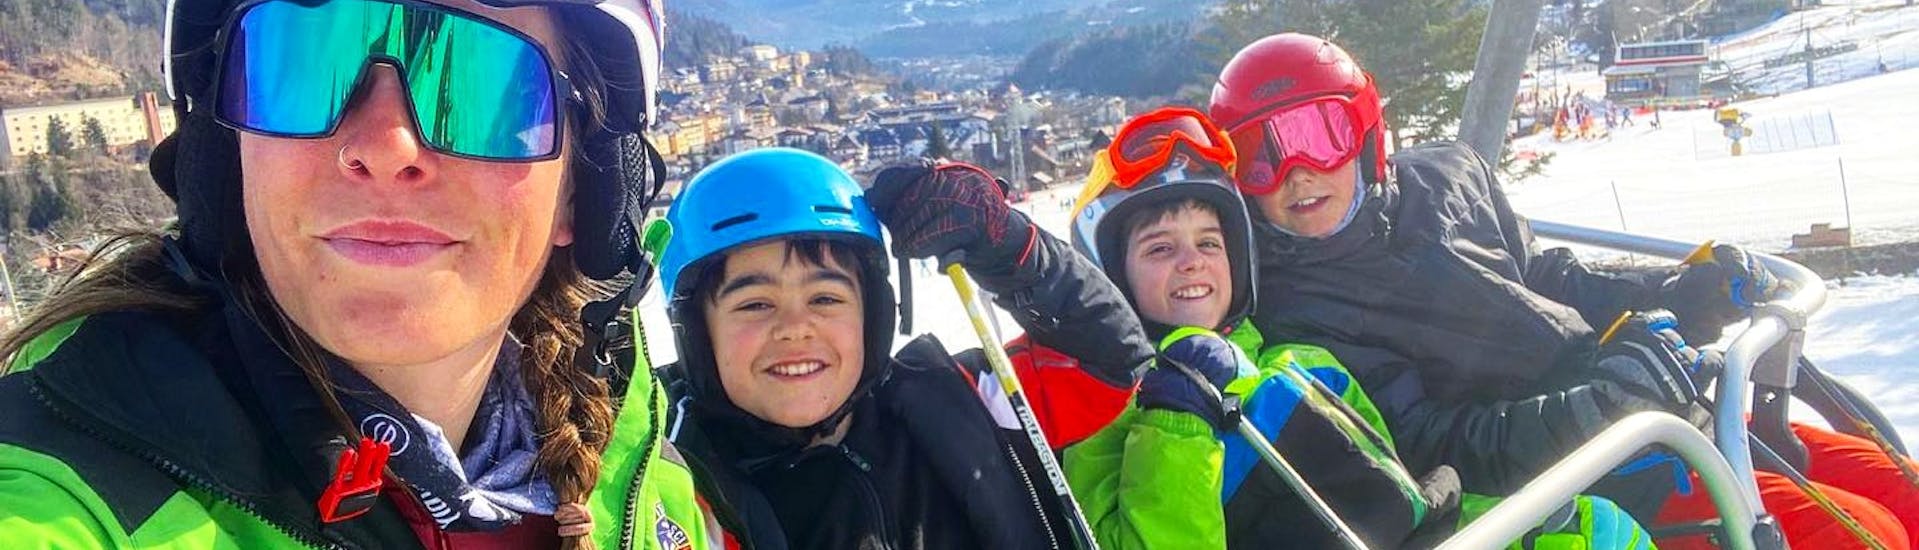 Clases de esquí para niños a partir de 4 años para todos los niveles.